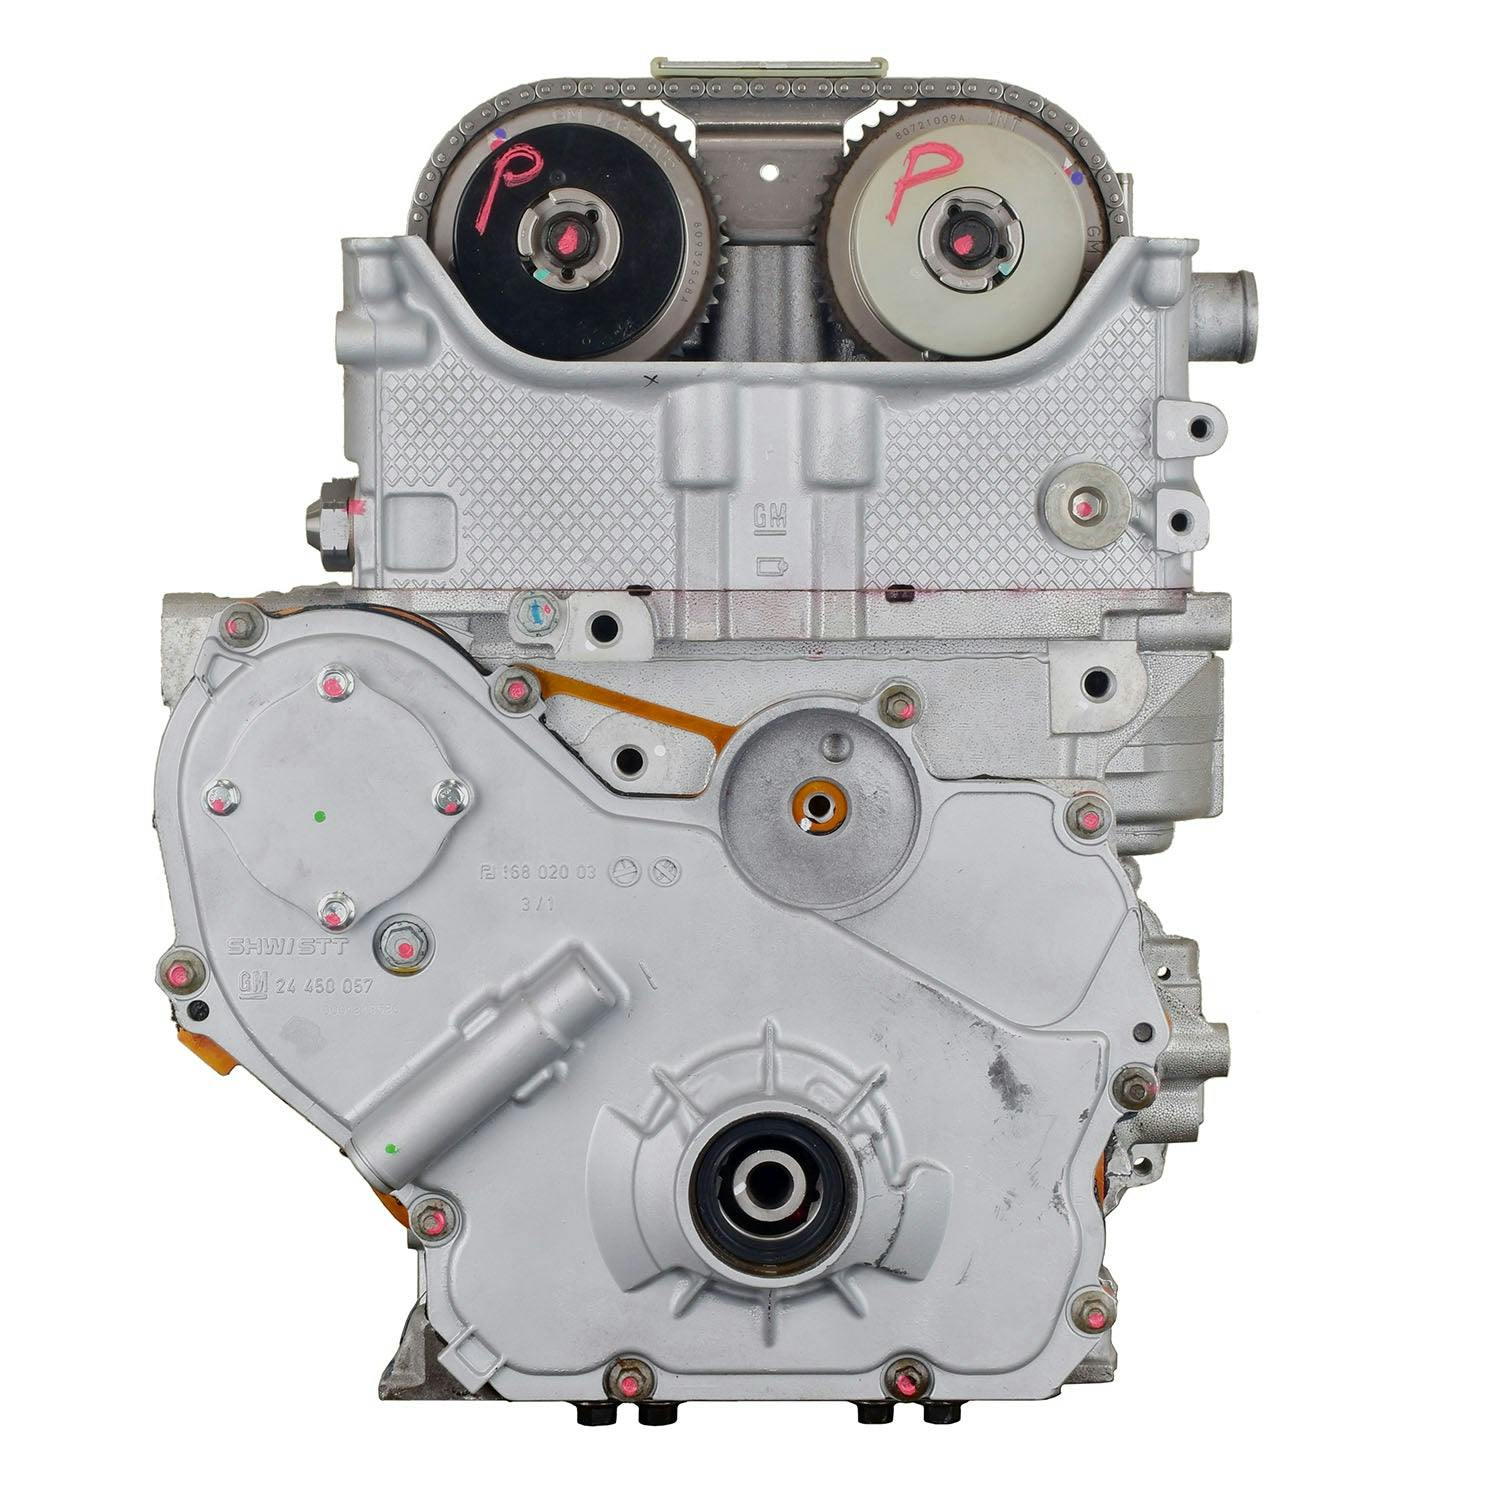 2.4L Inline-4 Engine for 2009-2012 Chevrolet Malibu/Pontiac G6/Saturn Aura